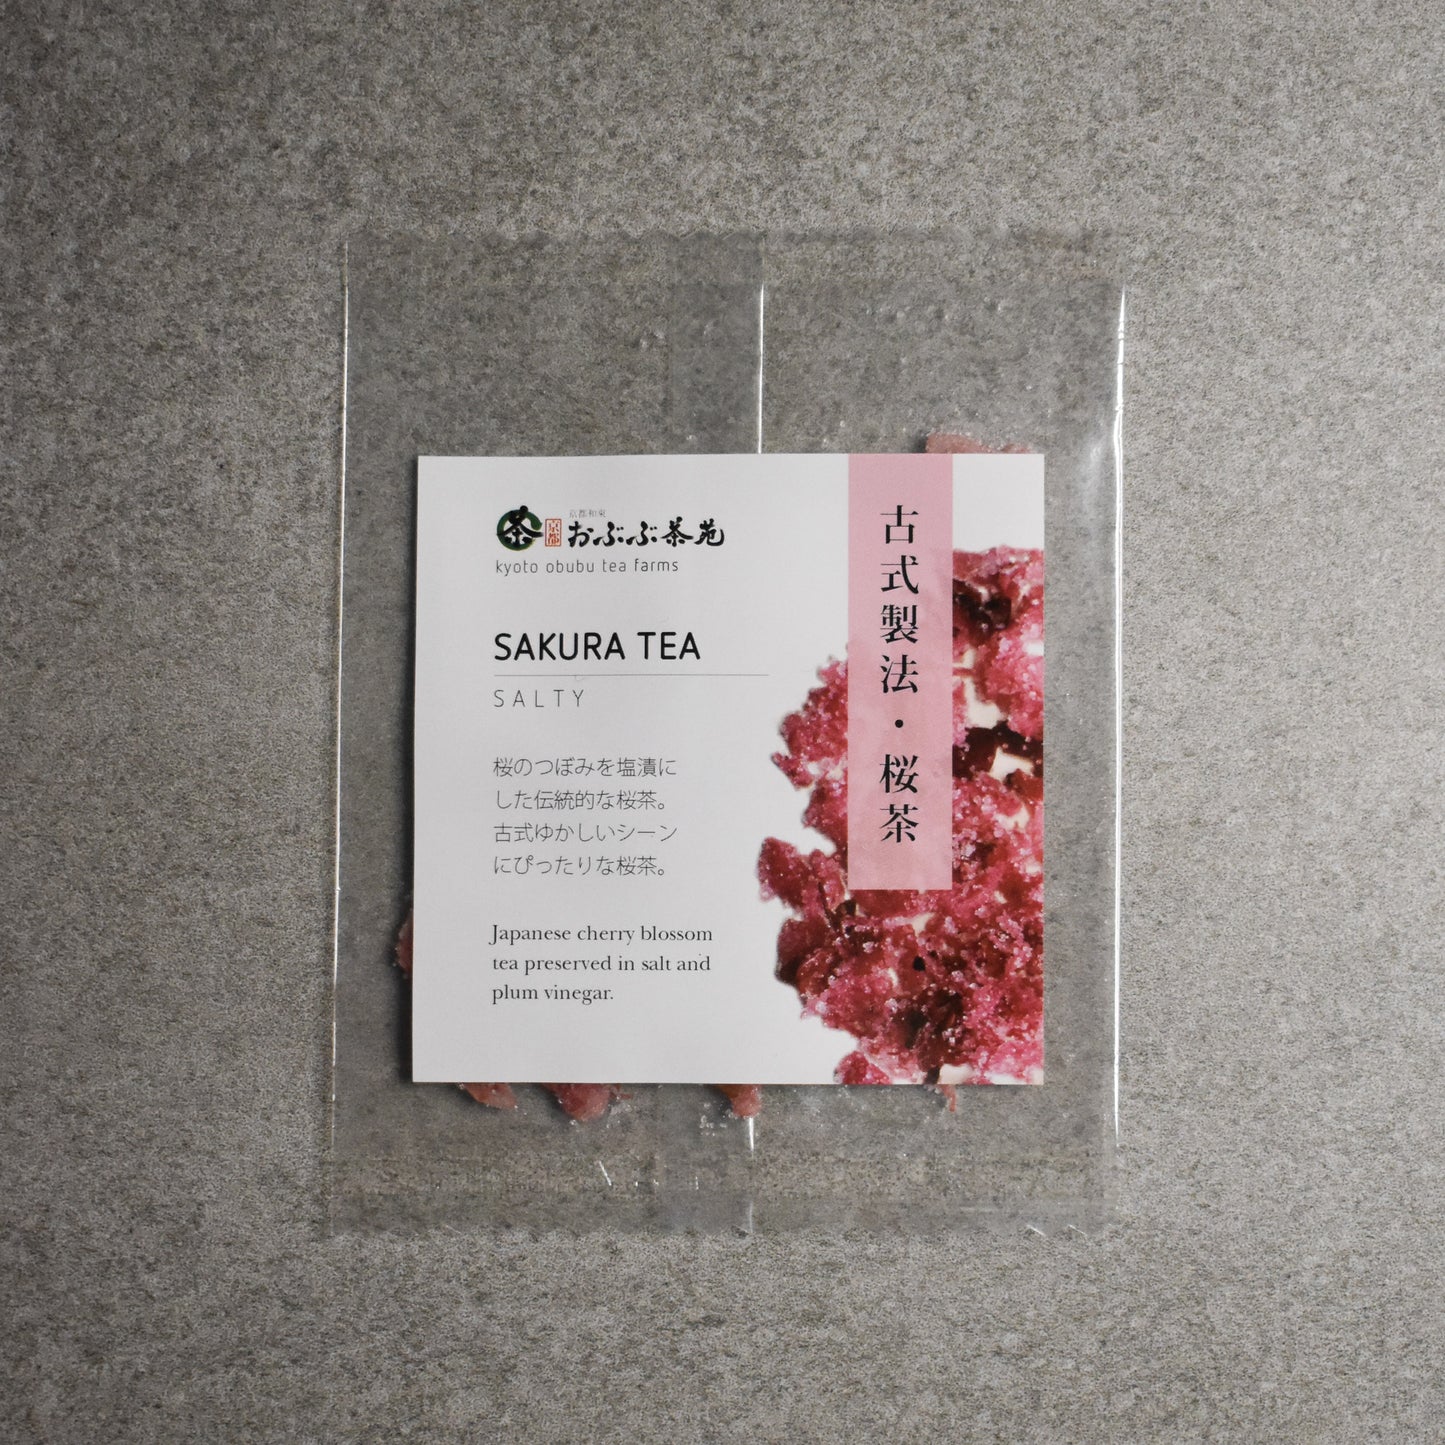 Obubu Tea Farm: Sakura Flower Tea (Salted)